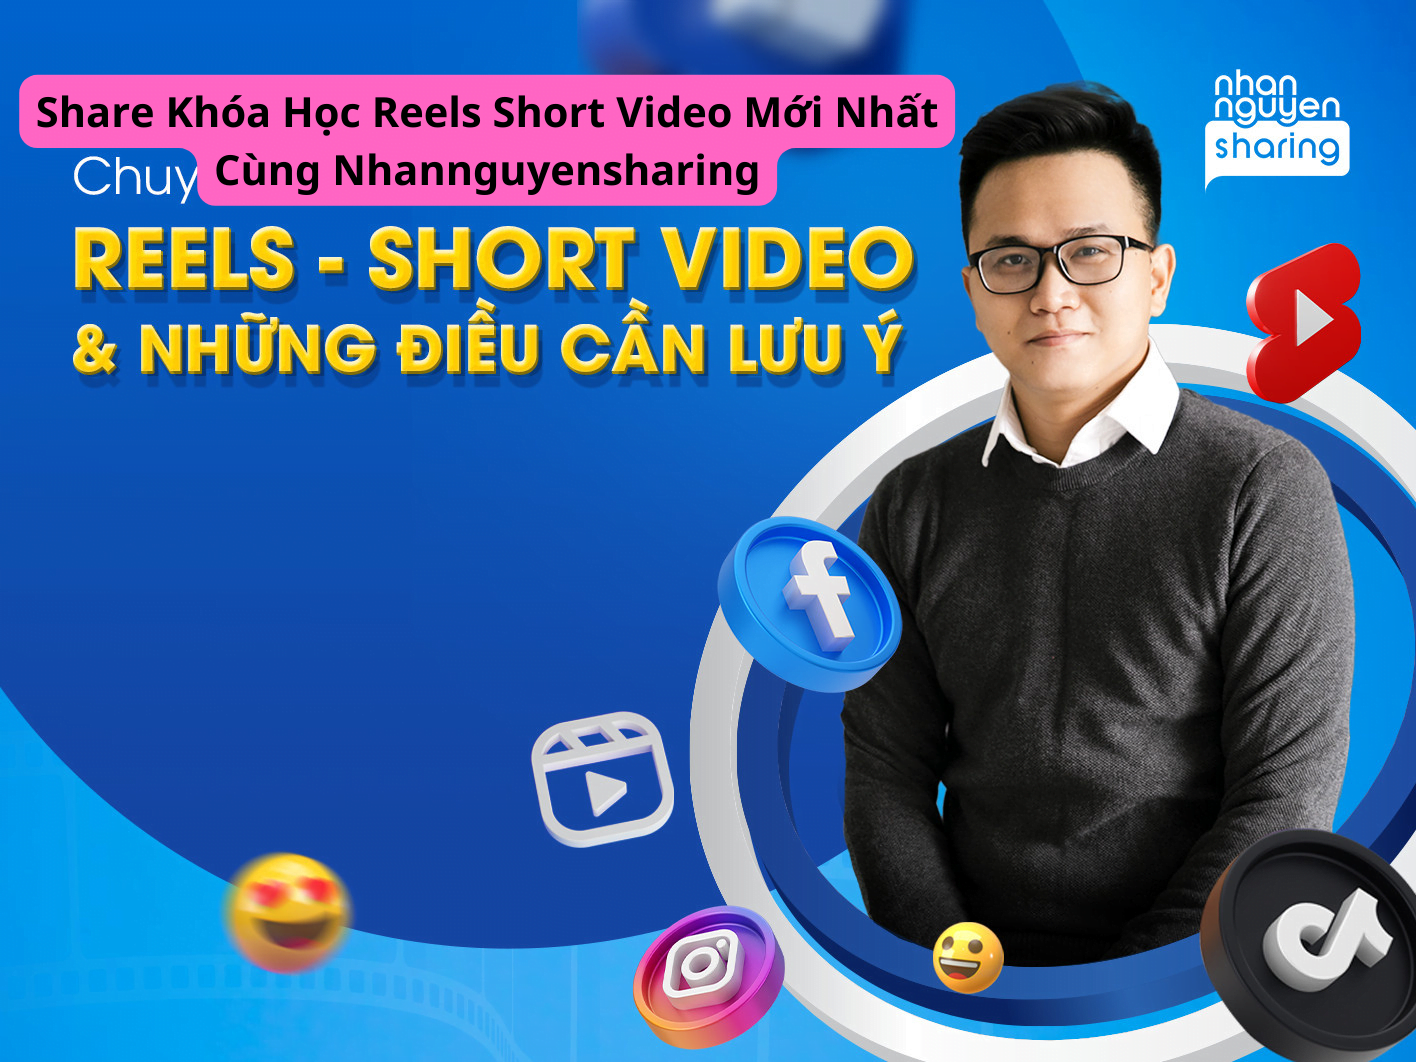 Share Khóa Học Reels Short Video Mới Nhất Cùng Nhannguyensharing